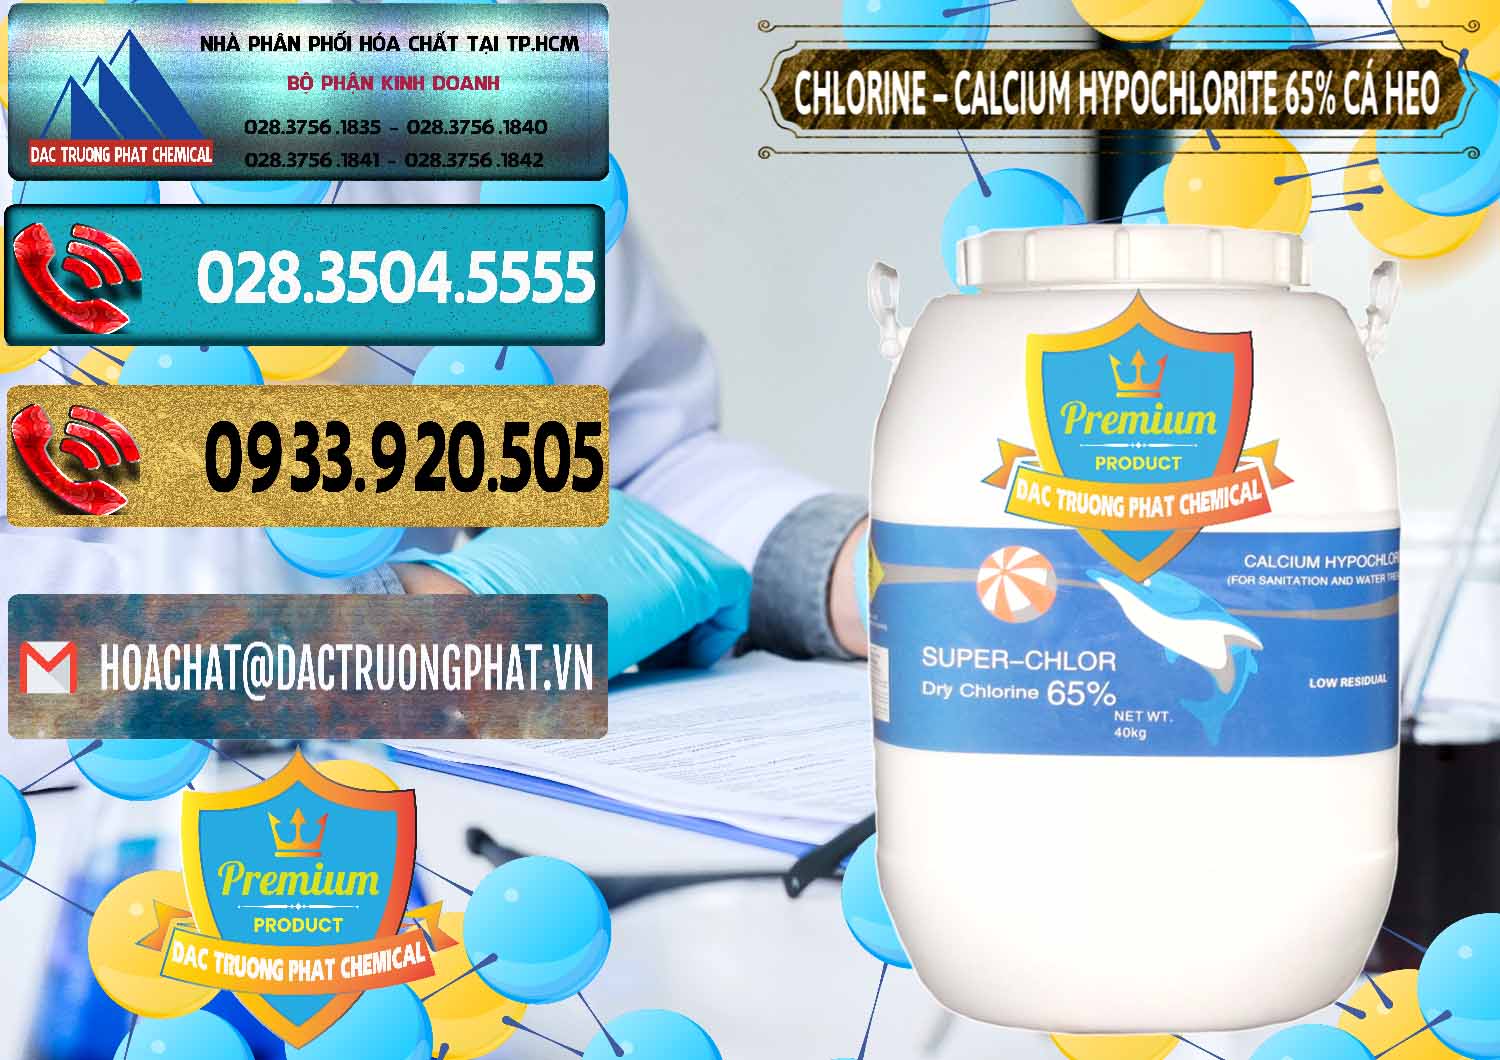 Công ty chuyên cung ứng - bán Clorin - Chlorine Cá Heo 65% Trung Quốc China - 0053 - Chuyên kinh doanh - phân phối hóa chất tại TP.HCM - hoachatdetnhuom.com